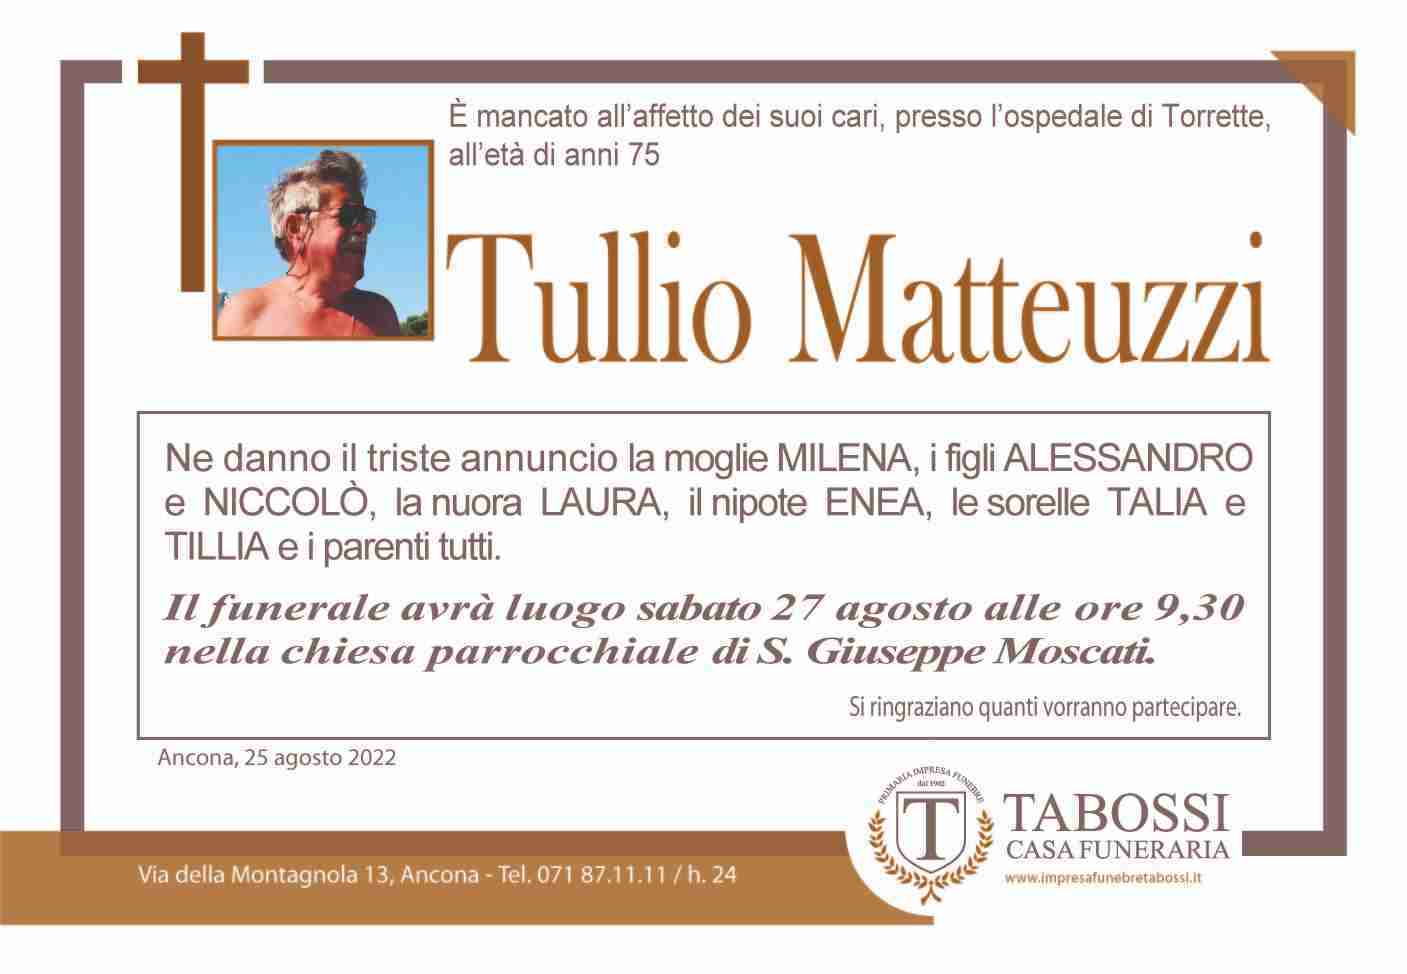 Tullio Matteuzzi